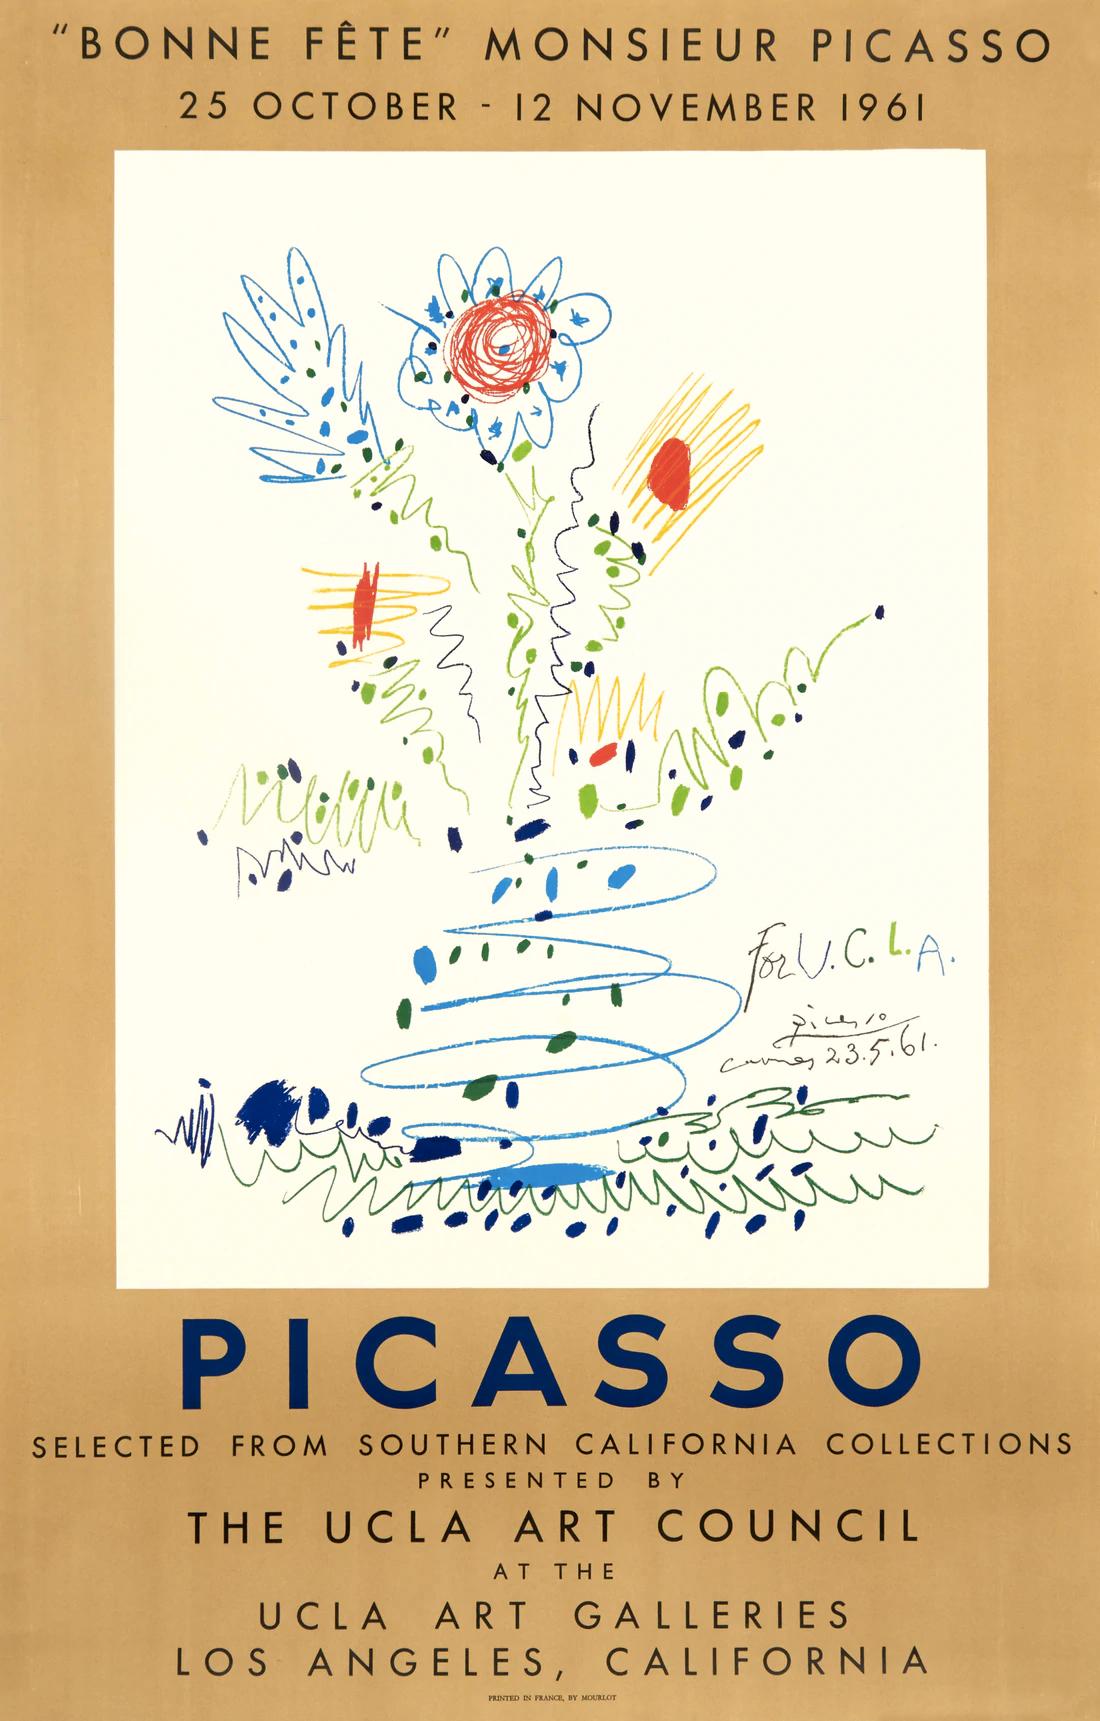 Artiste : Pablo Picasso

Médium : Affiche lithographique originale, 1961

Dimensions : 38.75 x 25 in, 98,4 x 63,5 cm

Papier pour posters classiques - Condition parfaite A+

Cette affiche d'exposition fantaisiste est un dessin original de Pablo